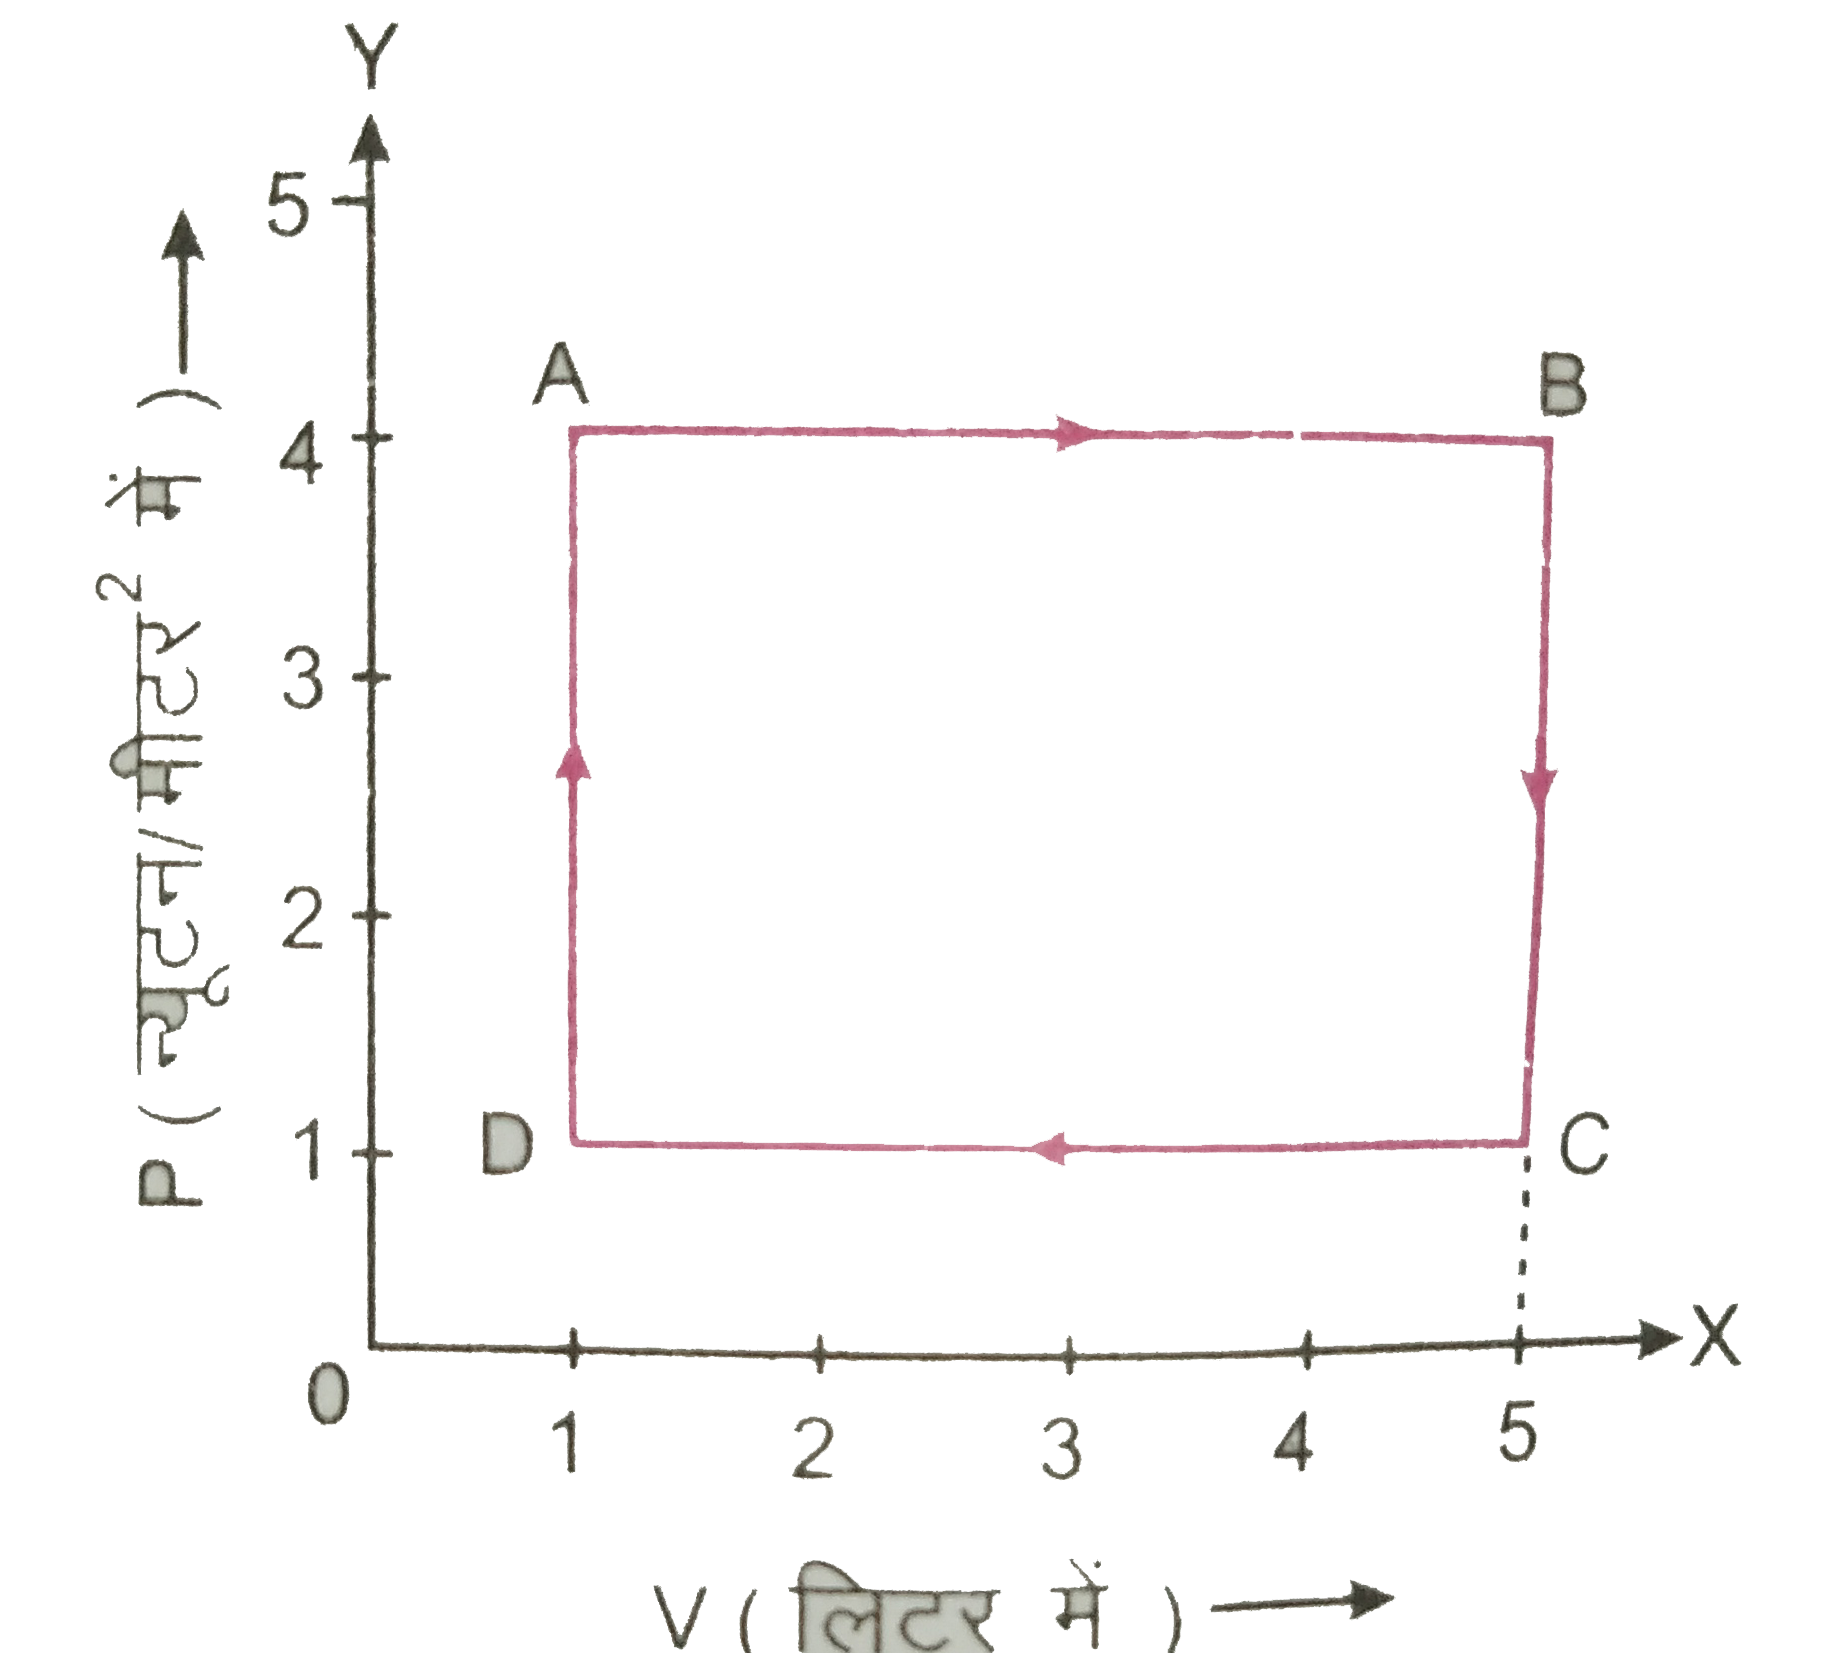 चित्र  में किसी गैस की अवस्था परिवर्तन के लिए P-V आरेख प्रदर्शित है। गणना कीजिए।  D से A तक अवस्था परिवर्तन में किया गया कार्य |